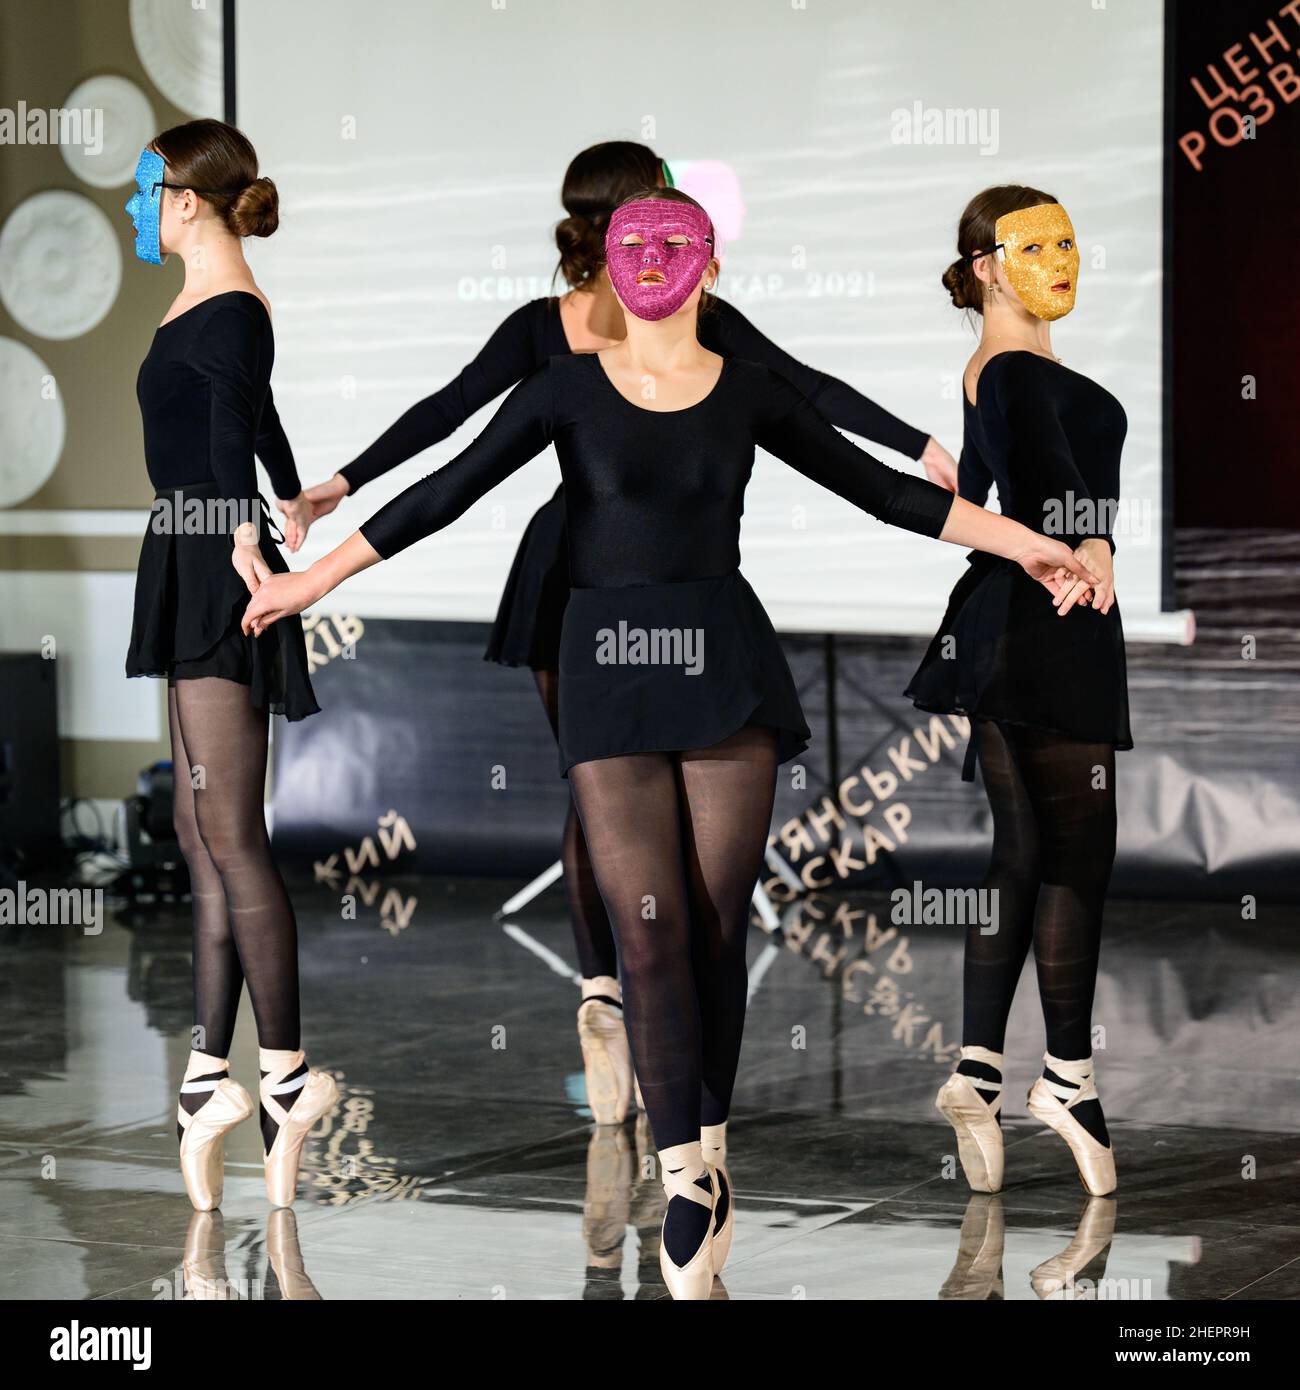 Dolyna, Ukraine 29. September 2021: Vier Ballerinas tanzen während des Bildungsurlaubs in den Massen, vier Ballerinas in Spitzenschuhen. Stockfoto